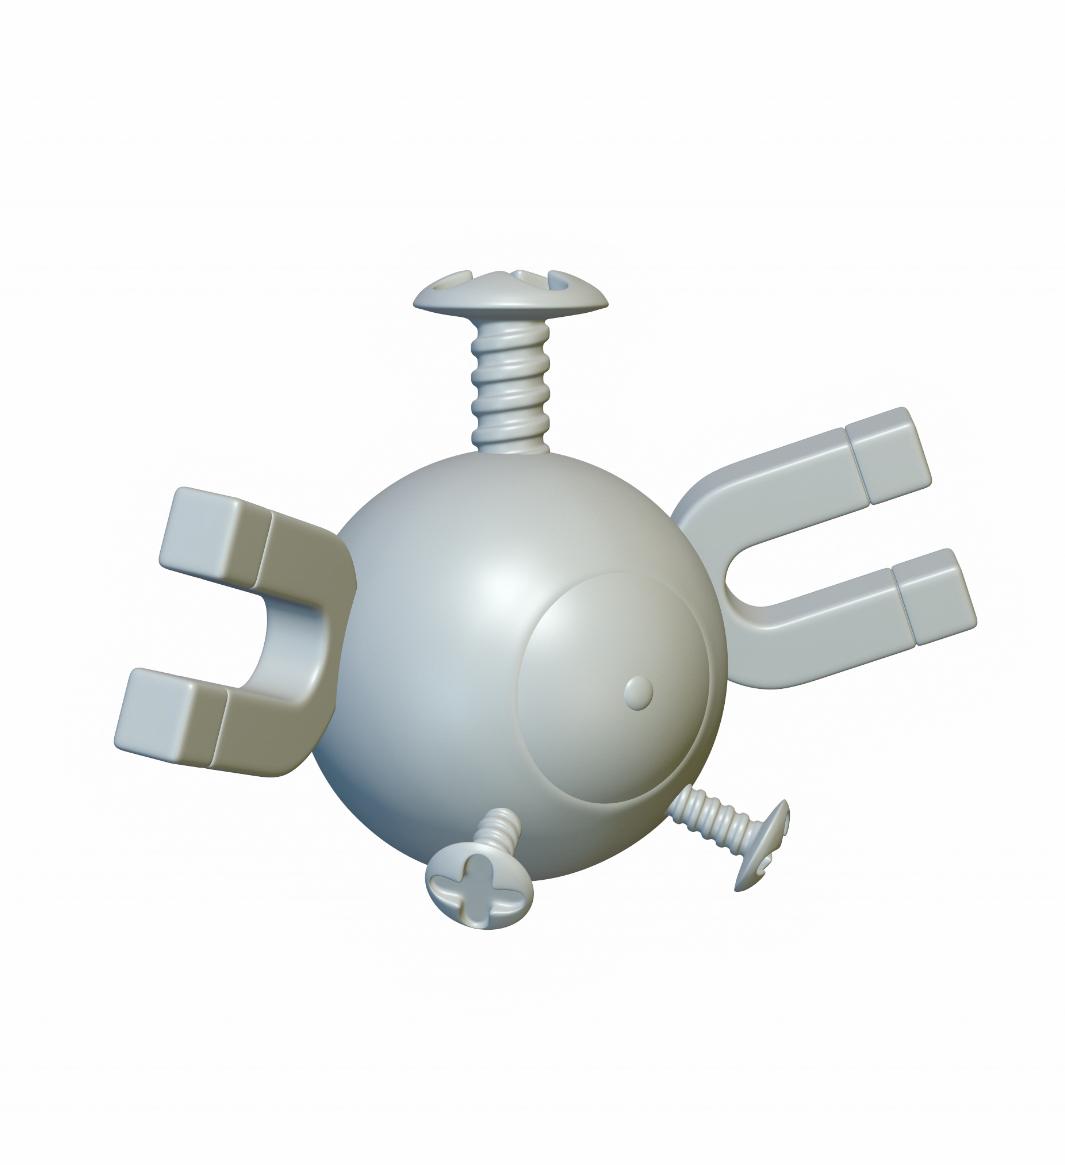 Pokemon Magnemite #81 - Optimized for 3D Printing 3d model